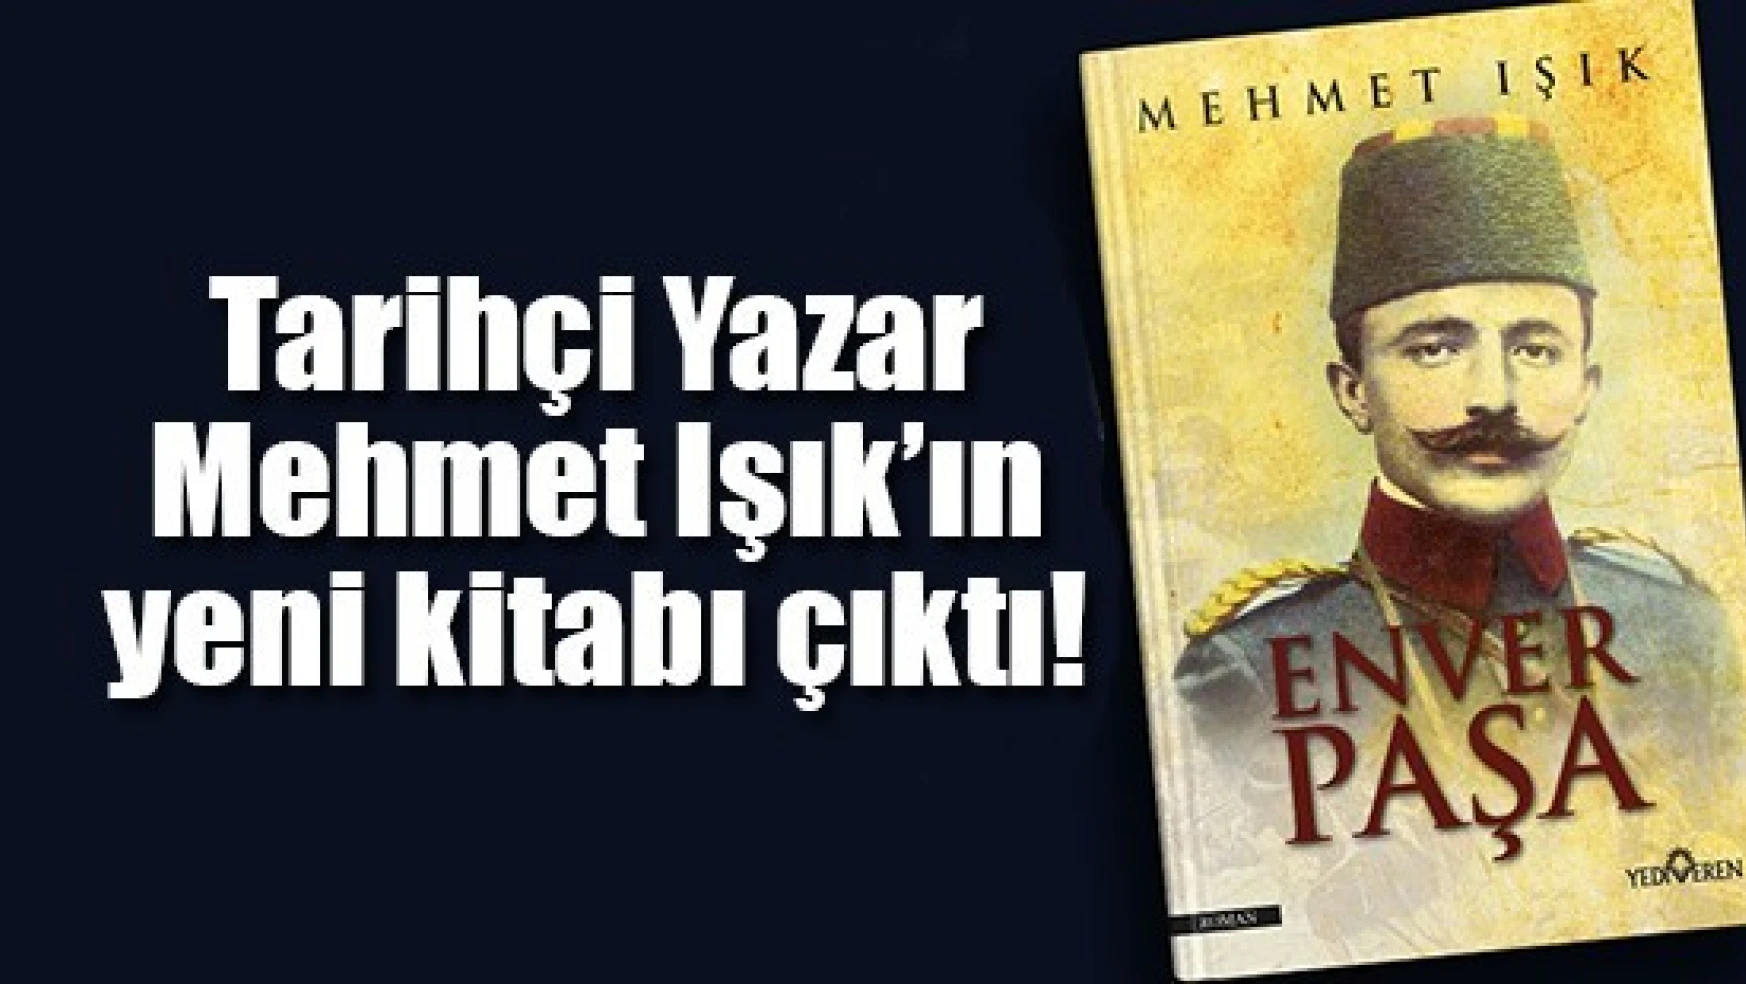 Tarihçi Yazar Mehmet Işık'ın yeni kitabı çıktı